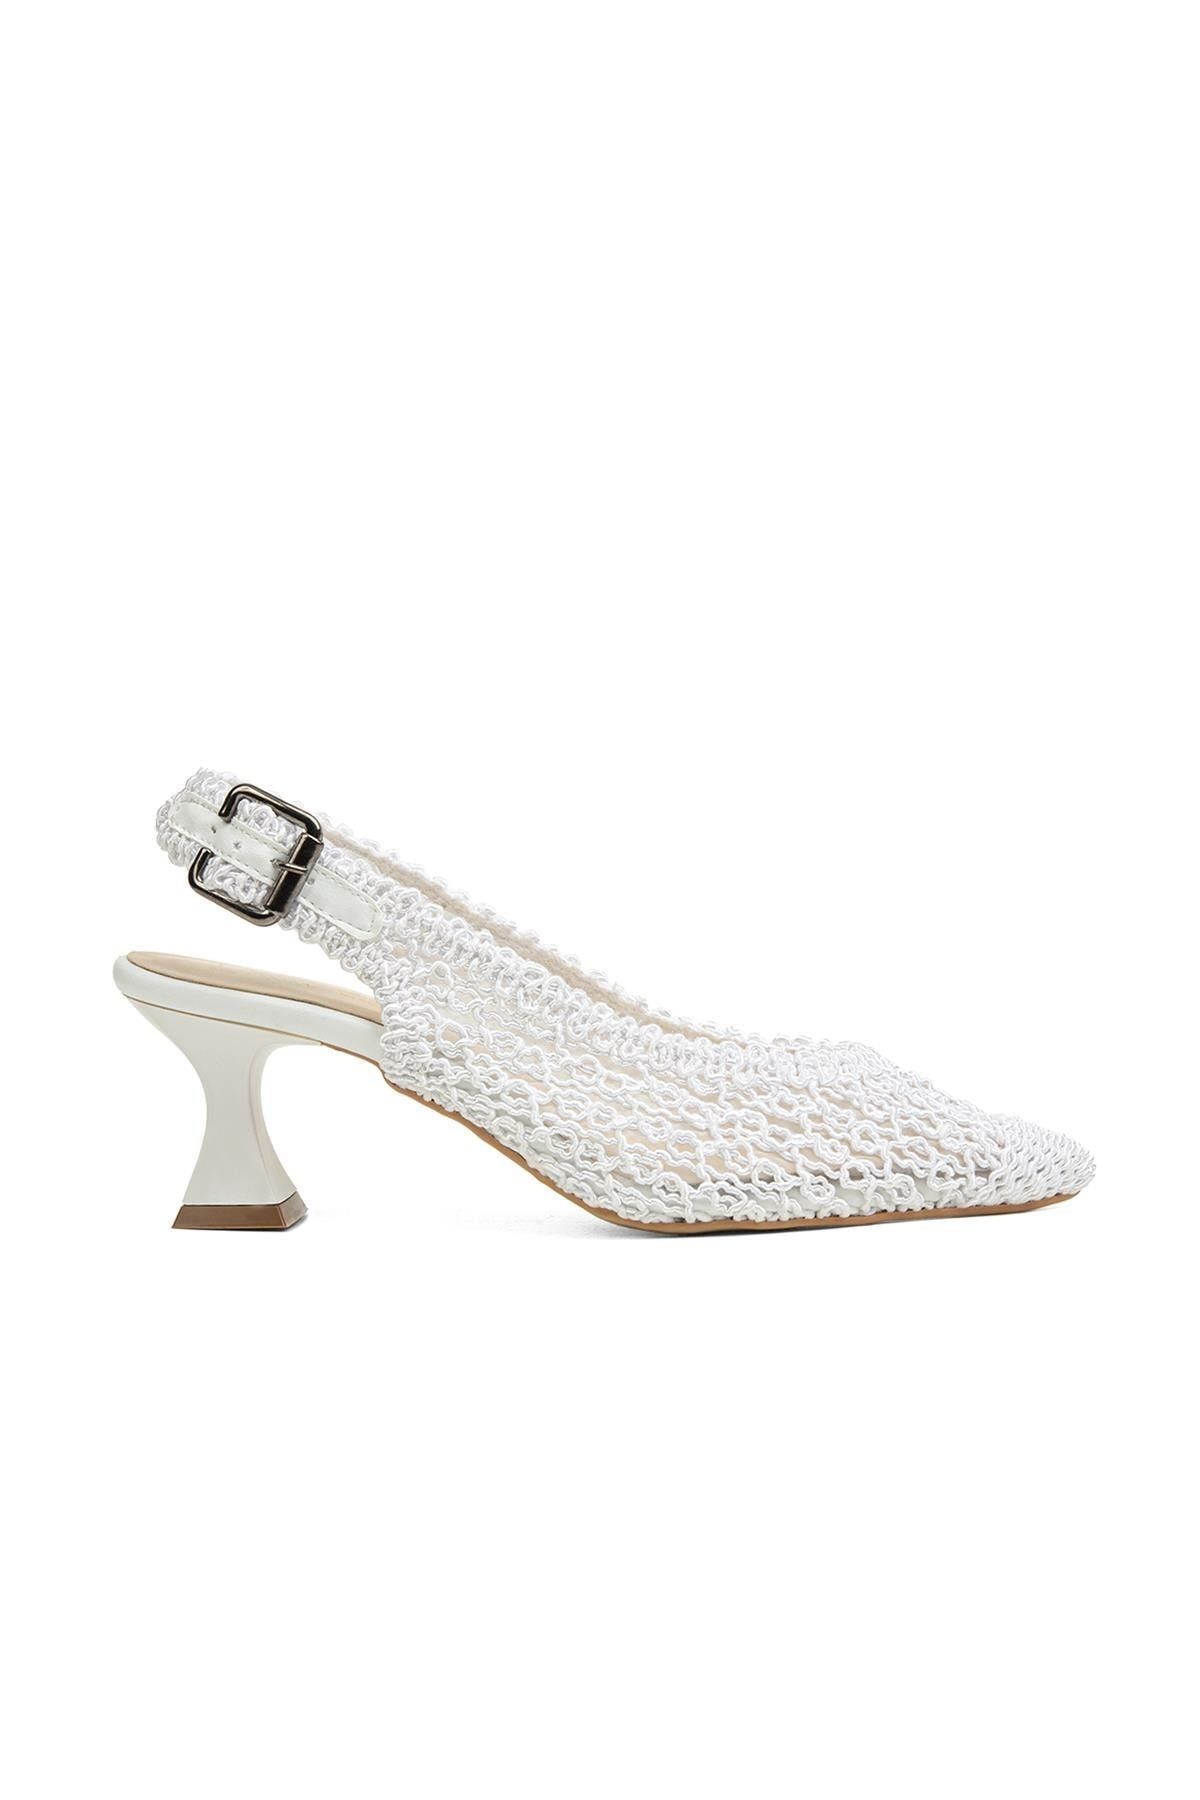 Pierre Cardin ® | Pc-52260-3959 Beyaz - Kadın Topuklu Ayakkabı